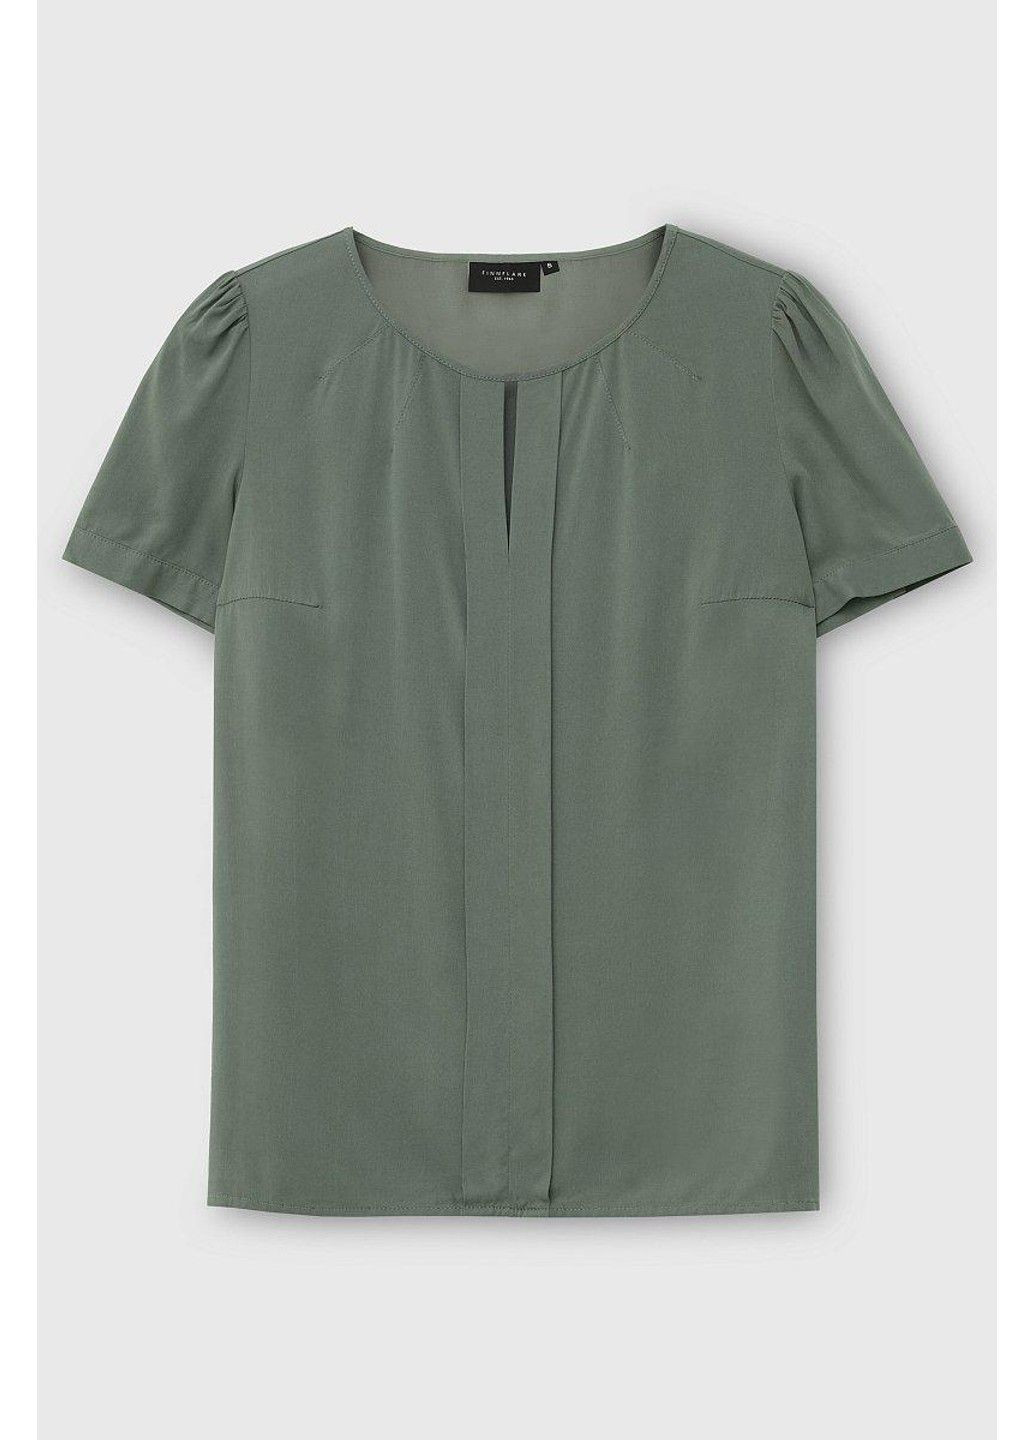 Зеленая летняя блузка bas-10022-534 Finn Flare